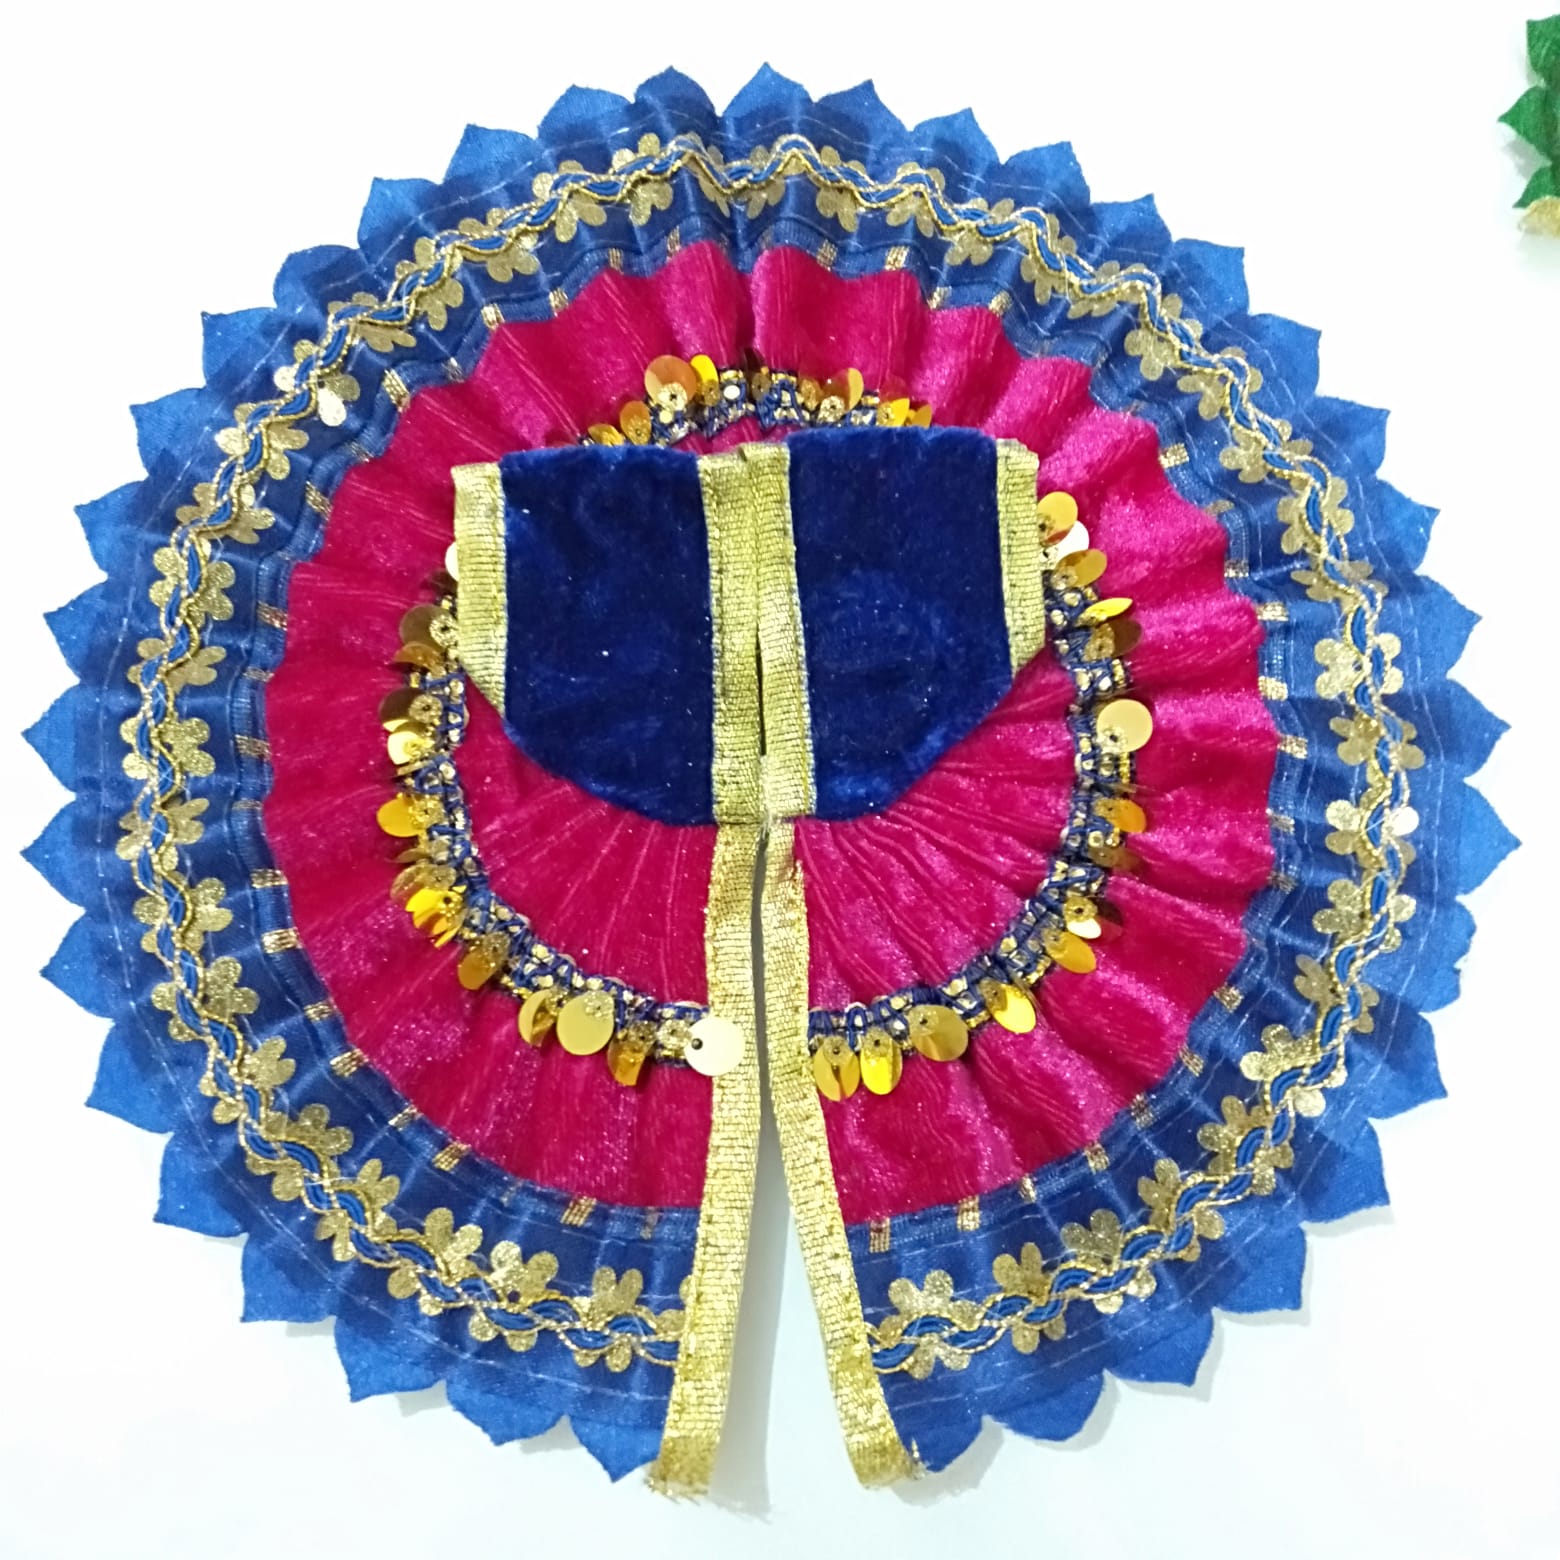 Crochet Winter Dress for Laddu Gopal / Kanhaji || Laddu Gopal Woollen Dress  || Thakurji Dress - YouTube